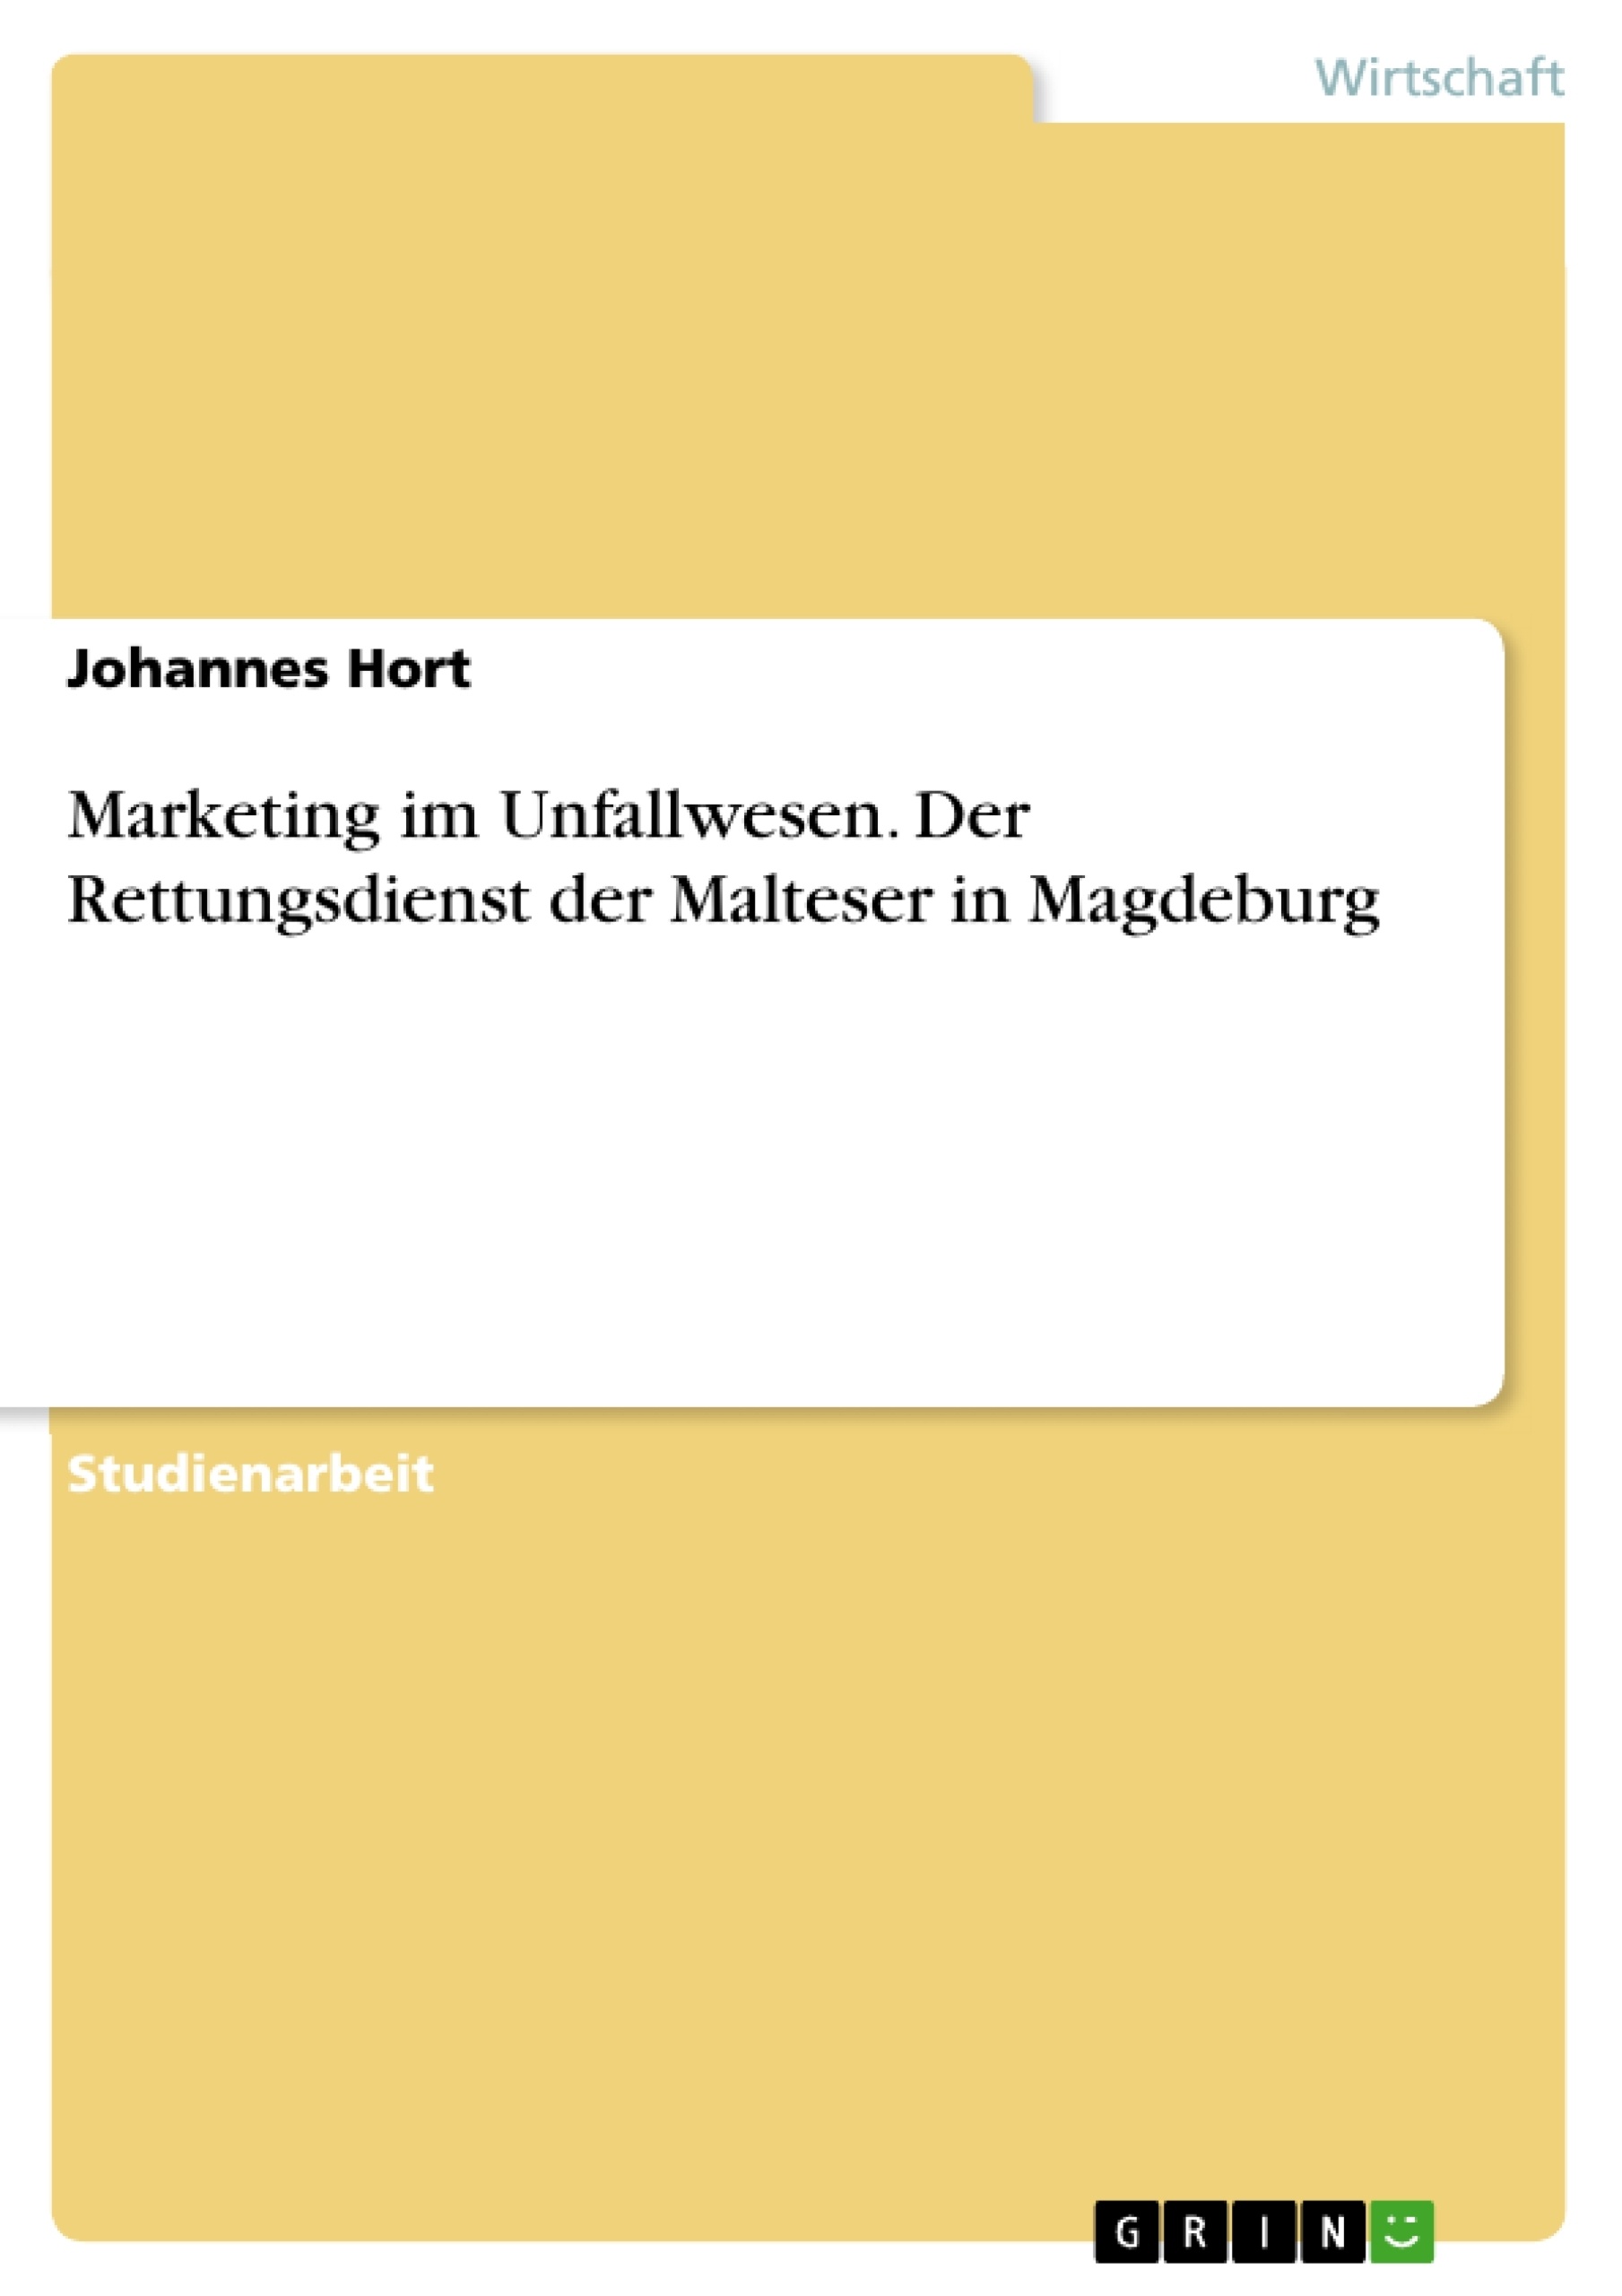 Title: Marketing im Unfallwesen. Der Rettungsdienst der Malteser in Magdeburg